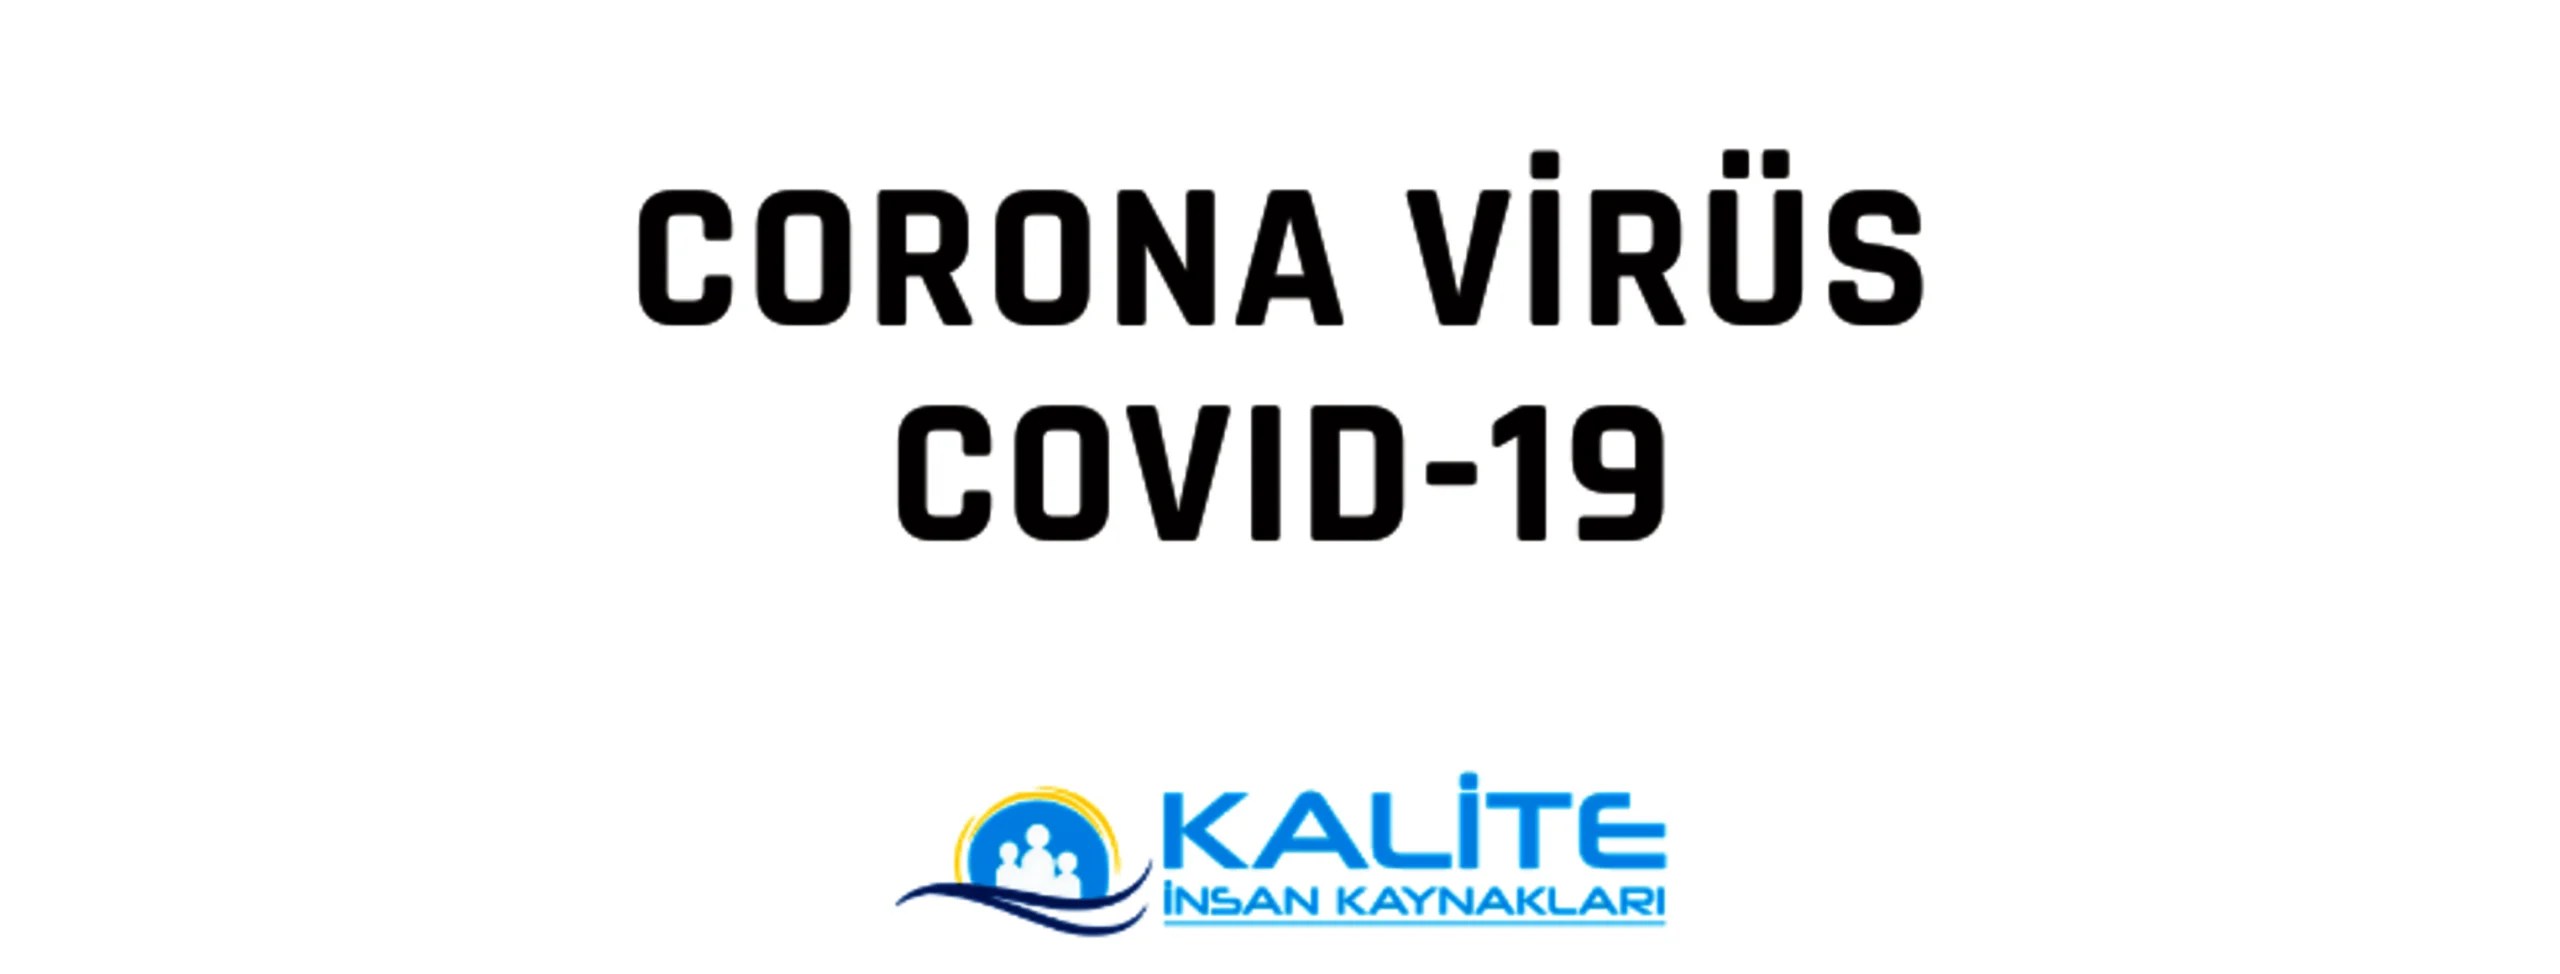 Corona Virüsü (Covid-19) Nedir?